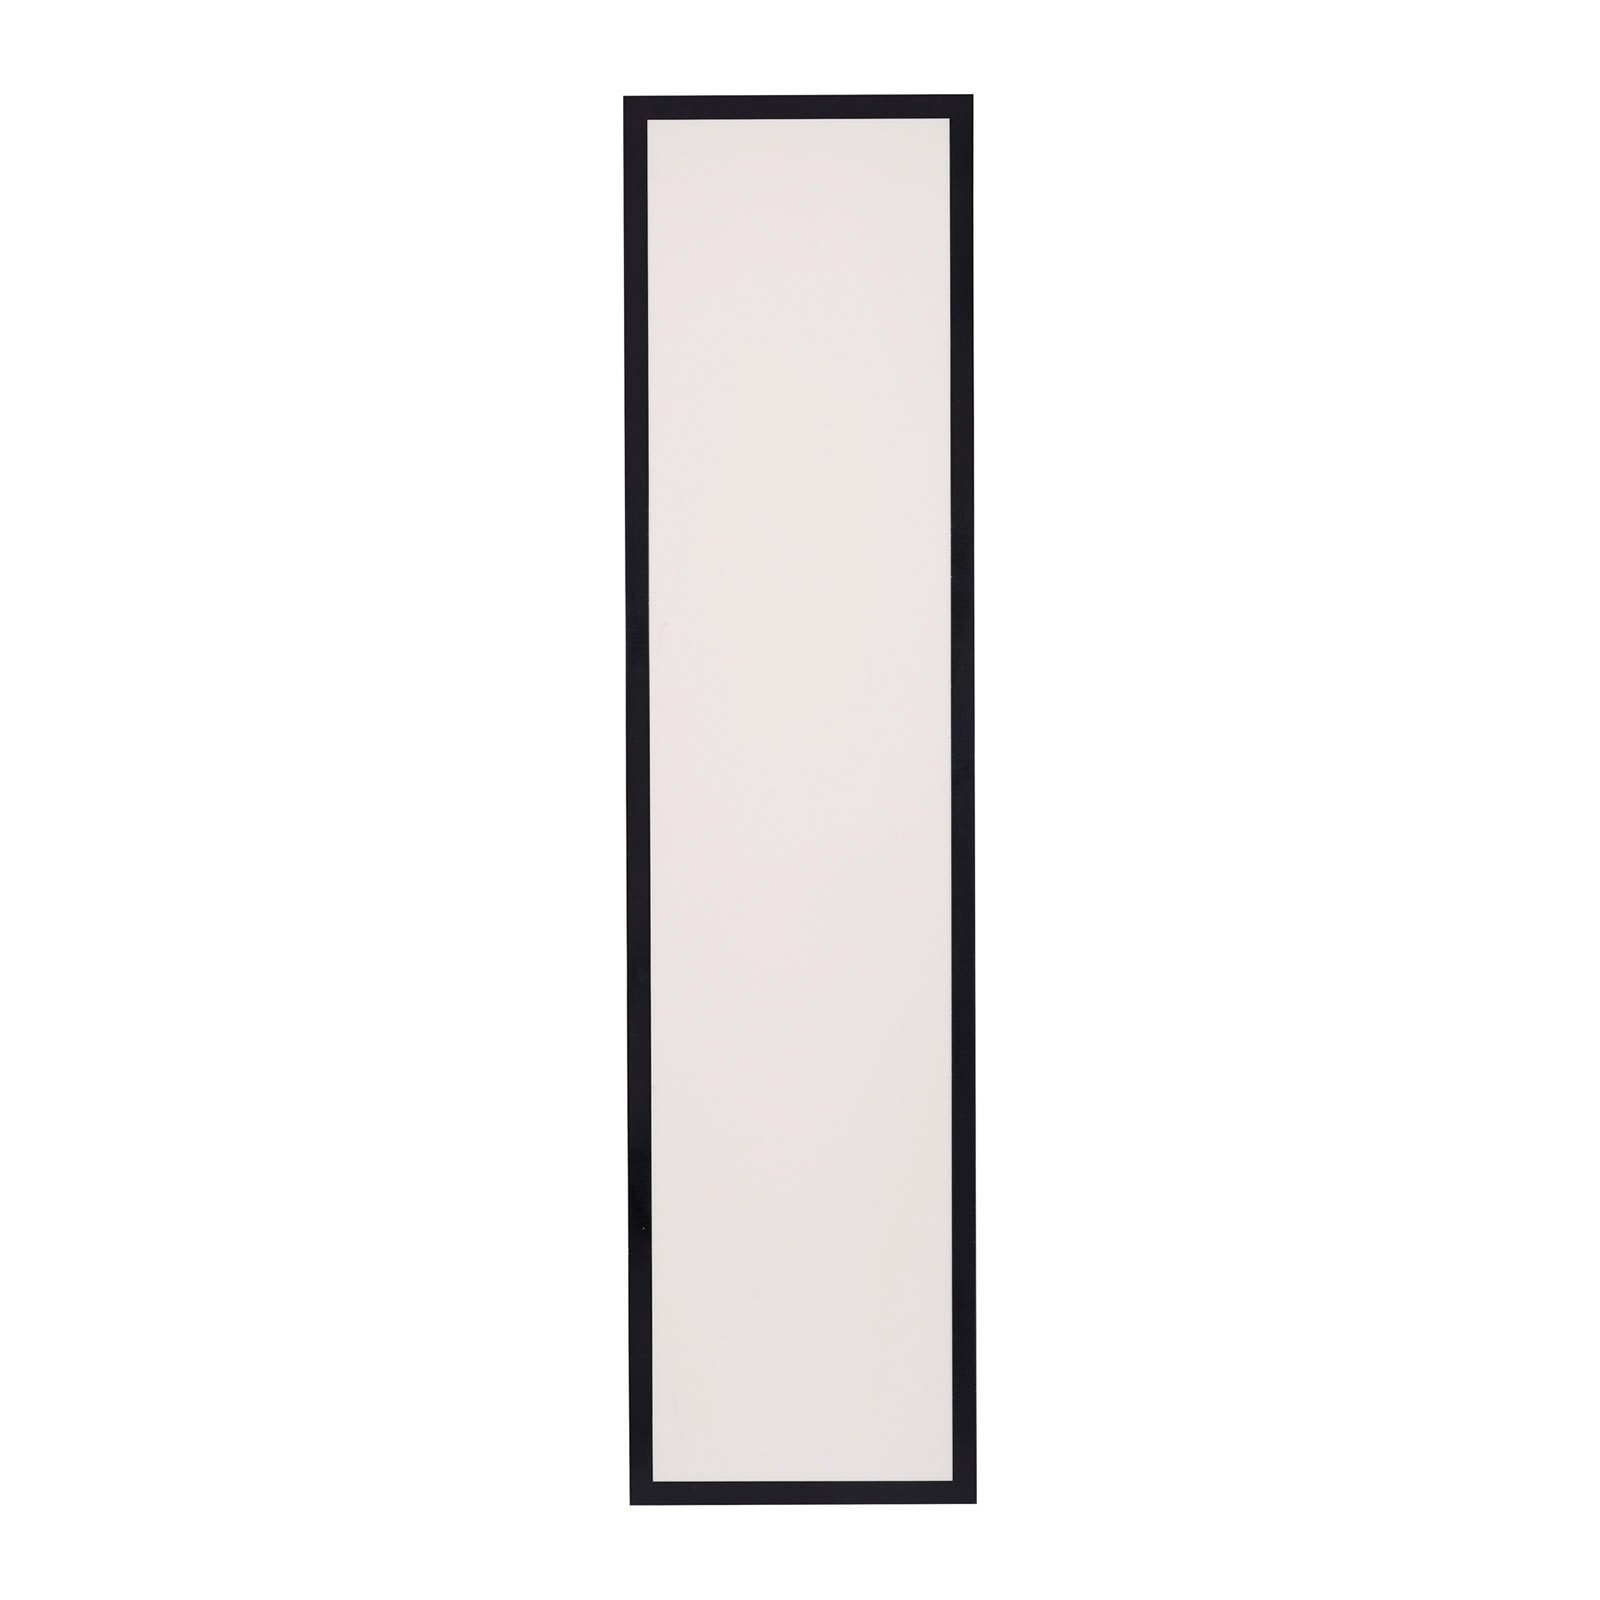 Panel de superficie LED Flat CCT negro 119 x 29 cm